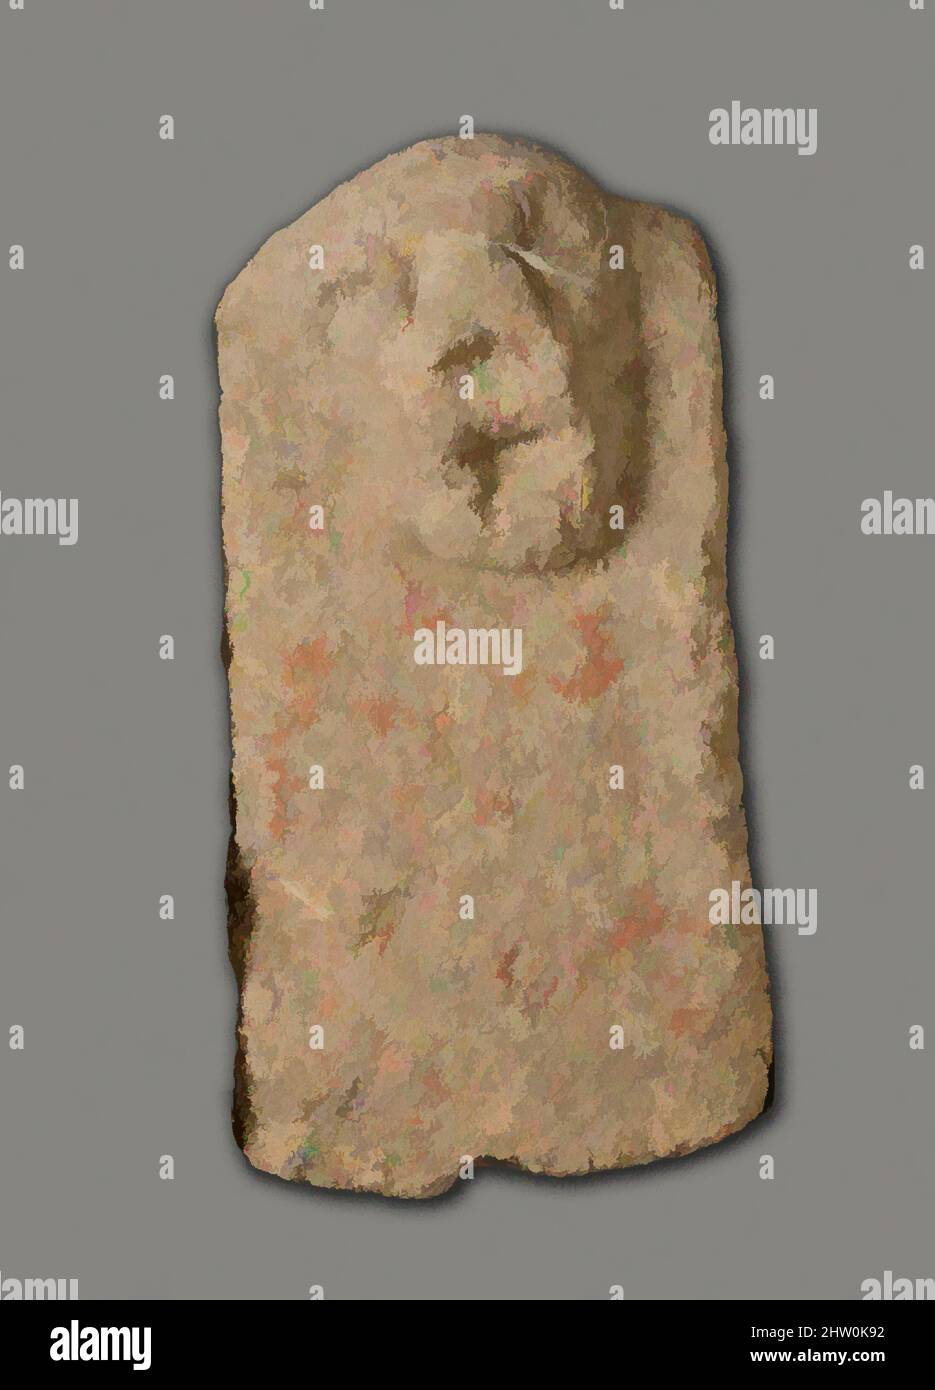 Art inspiré par la figure magique, fin du Royaume moyen–deuxième période intermédiaire, dynastie 13–SIP, env. 1802–1550 av. J.-C., de l'Égypte, région Memphite, Lisht Sud, à l'ouest de la mastaba de Senwosretankh, dépôt de surface, 1932–33, Clay (non tiré), H.. 7 cm (2 3/4 po); W. 3,5 cm (1 3/8 po), œuvres classiques modernisées par Artotop avec une touche de modernité. Formes, couleur et valeur, impact visuel accrocheur sur l'art émotions par la liberté d'œuvres d'art d'une manière contemporaine. Un message intemporel qui cherche une nouvelle direction créative. Artistes qui se tournent vers le support numérique et créent le NFT Artotop Banque D'Images